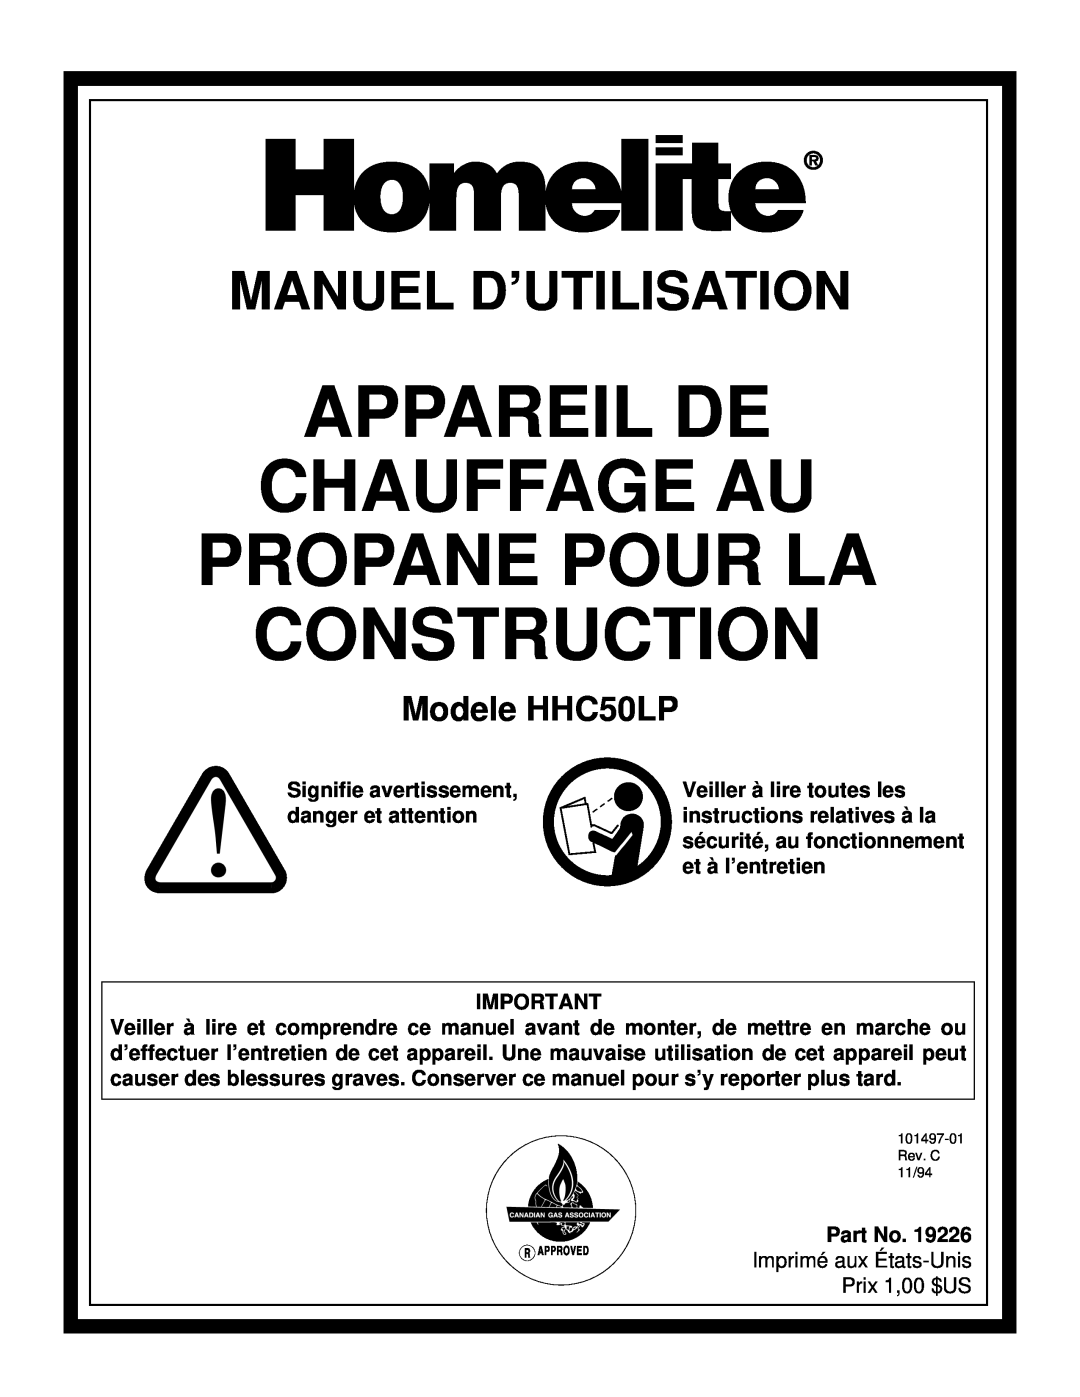 Homelite owner manual Appareil De Chauffage Au Propane Pour La, Construction, Manuel D’Utilisation, Modele HHC50LP 